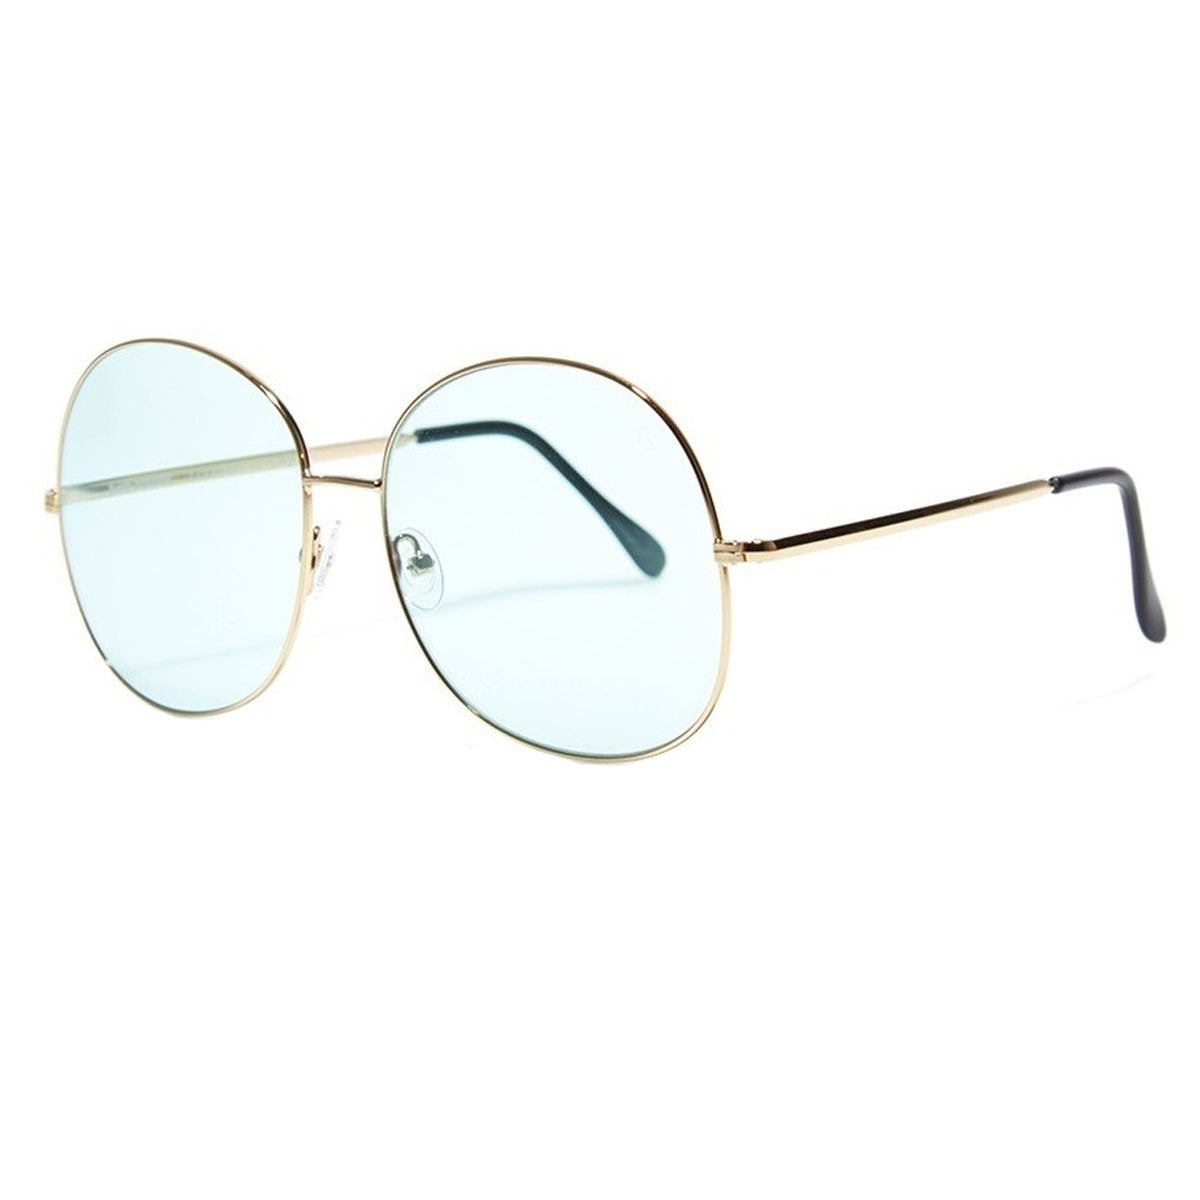 Bob Sdrunk Women's Sunglasses - Milly Light Green Lens / MILLY-102V-61-16-145